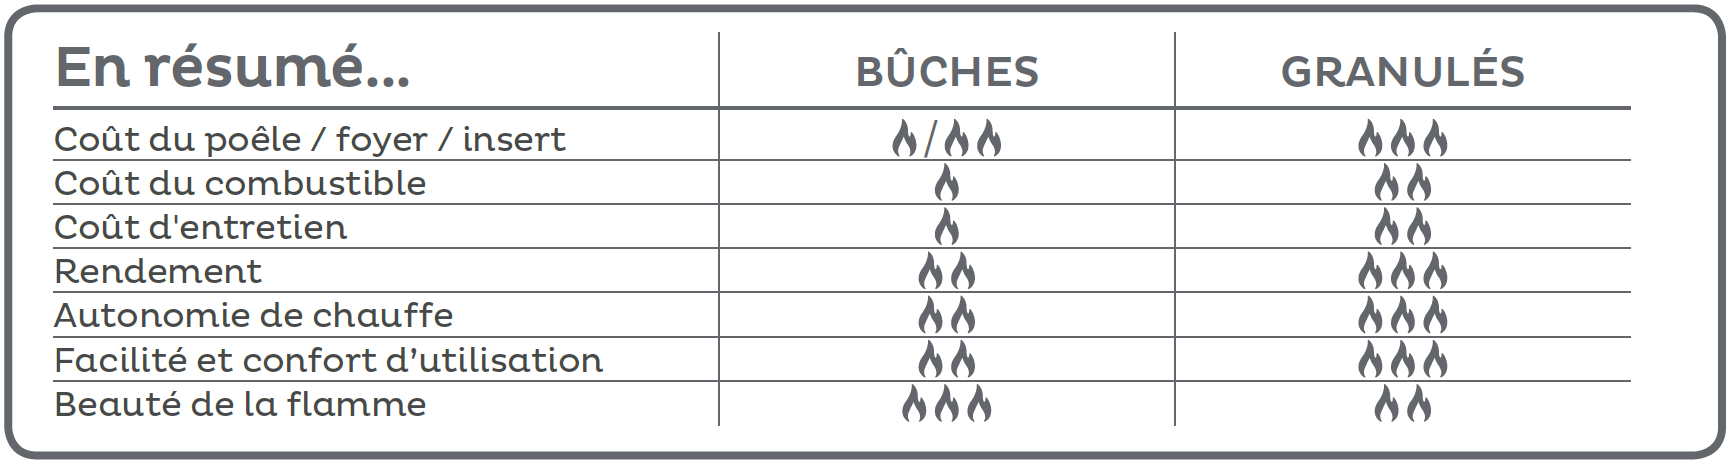 Résumé du comparatif entre les différents combustibles et les différents poêles